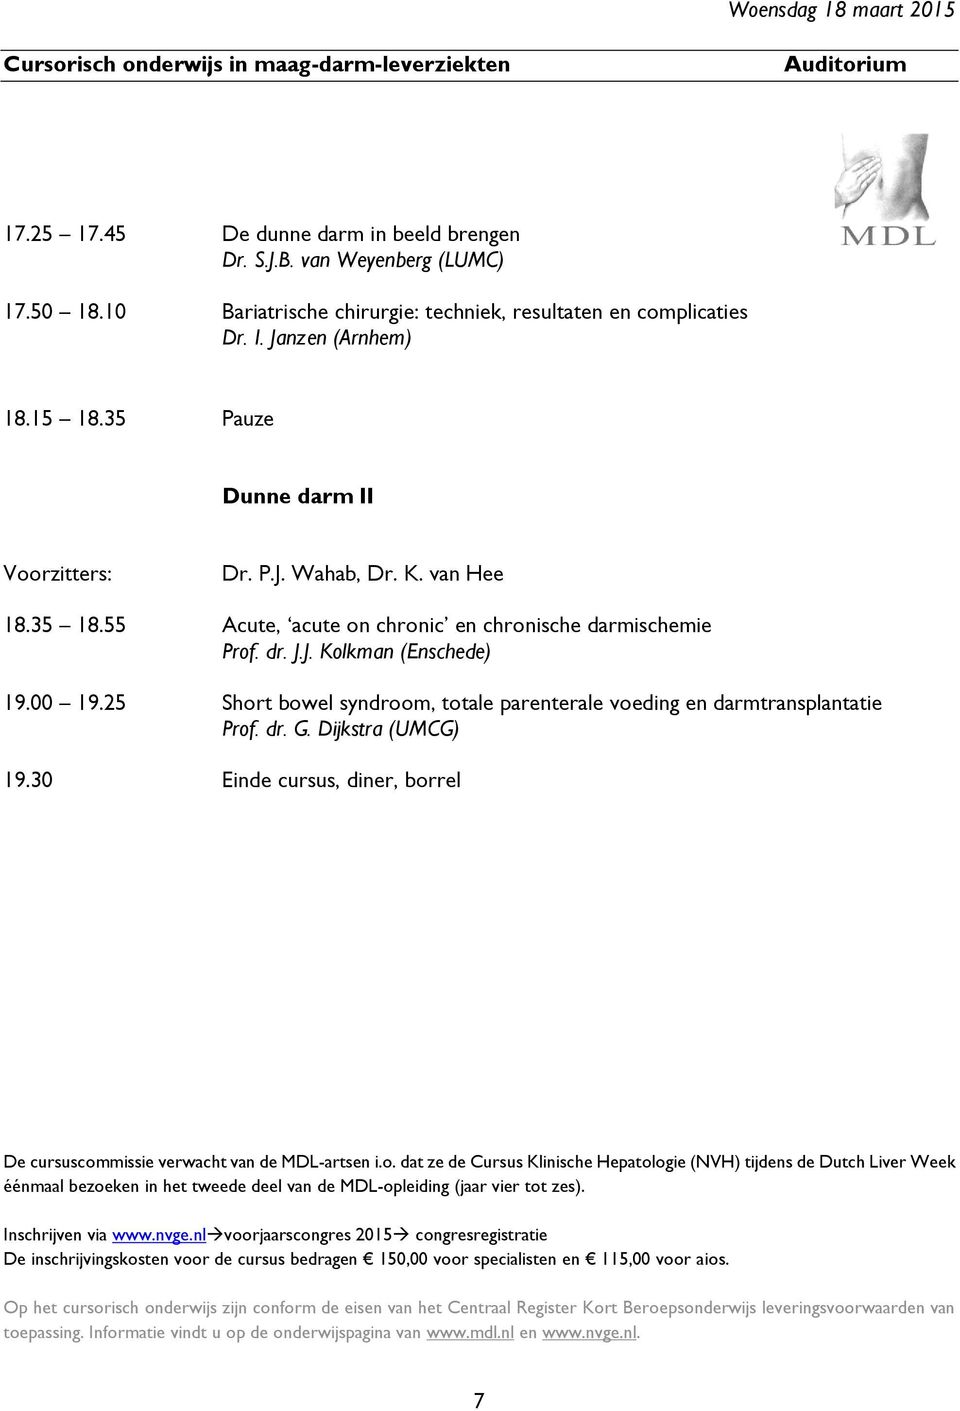 55 Acute, acute on chronic en chronische darmischemie Prof. dr. J.J. Kolkman (Enschede) 19.00 19.25 Short bowel syndroom, totale parenterale voeding en darmtransplantatie Prof. dr. G.